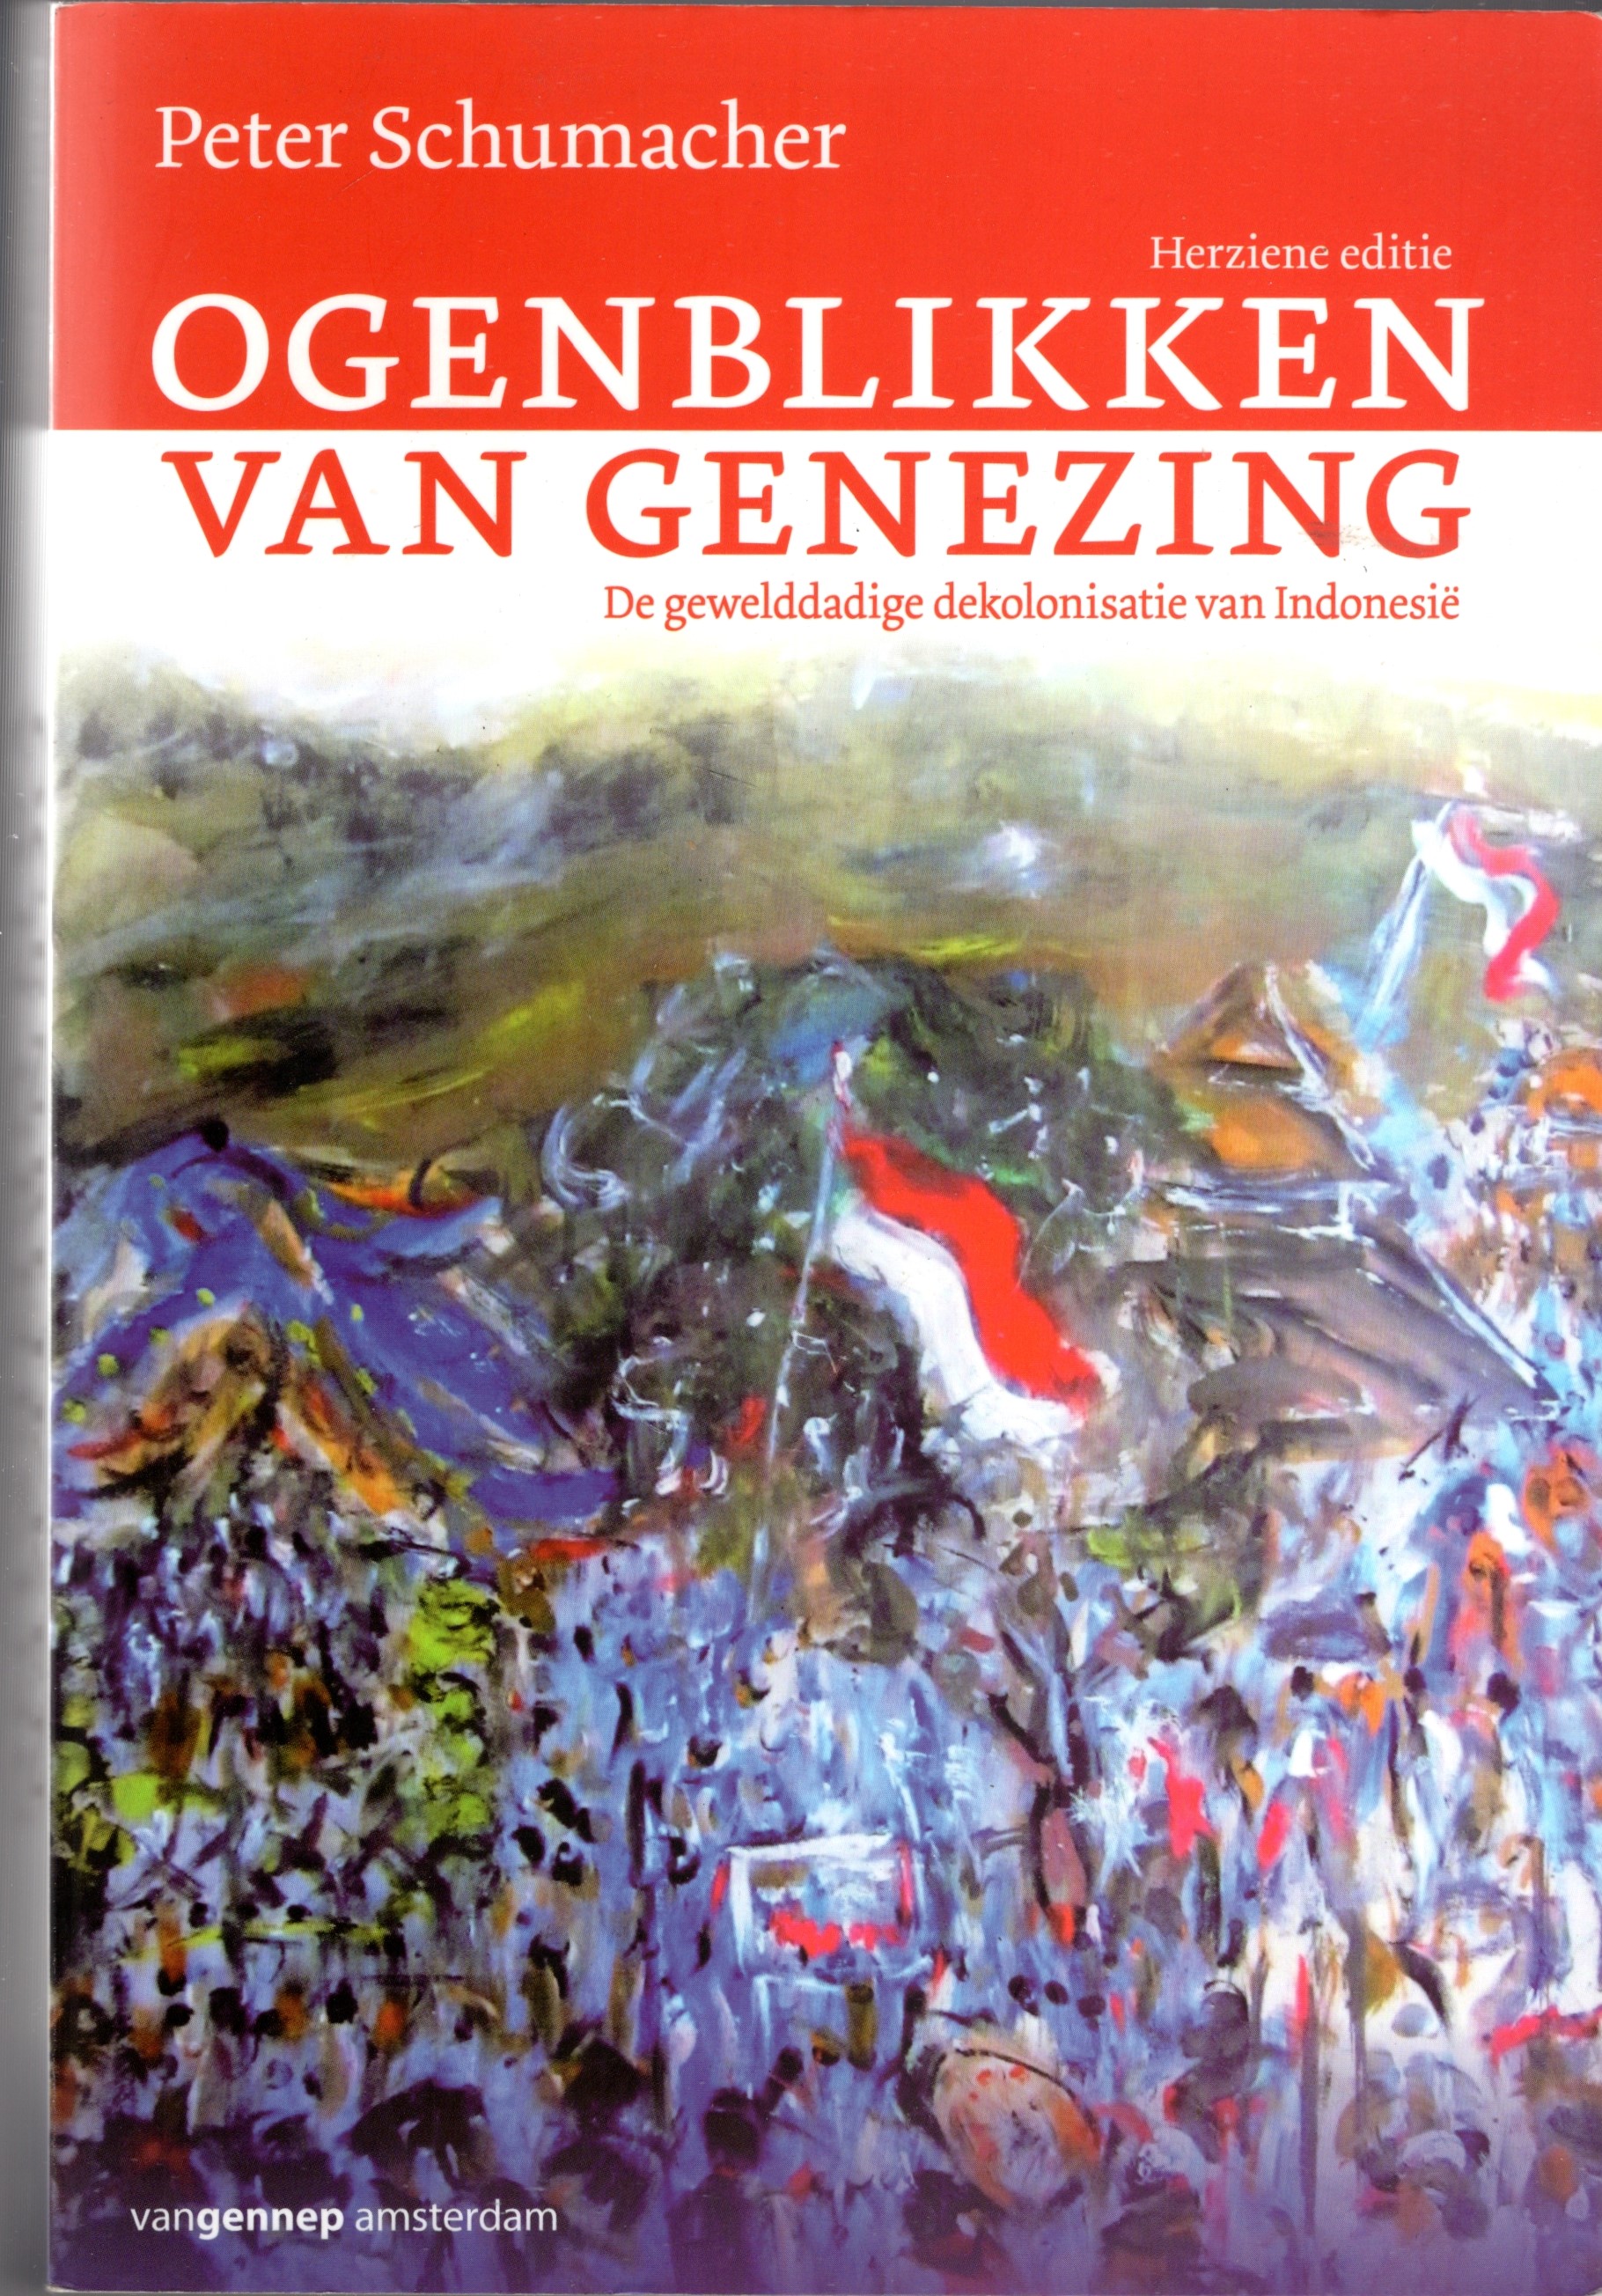 Schumacher, Peter - Ogenblikken van genezing. De gewelddadige dekolonisatie van Indonesie. Herziene editie